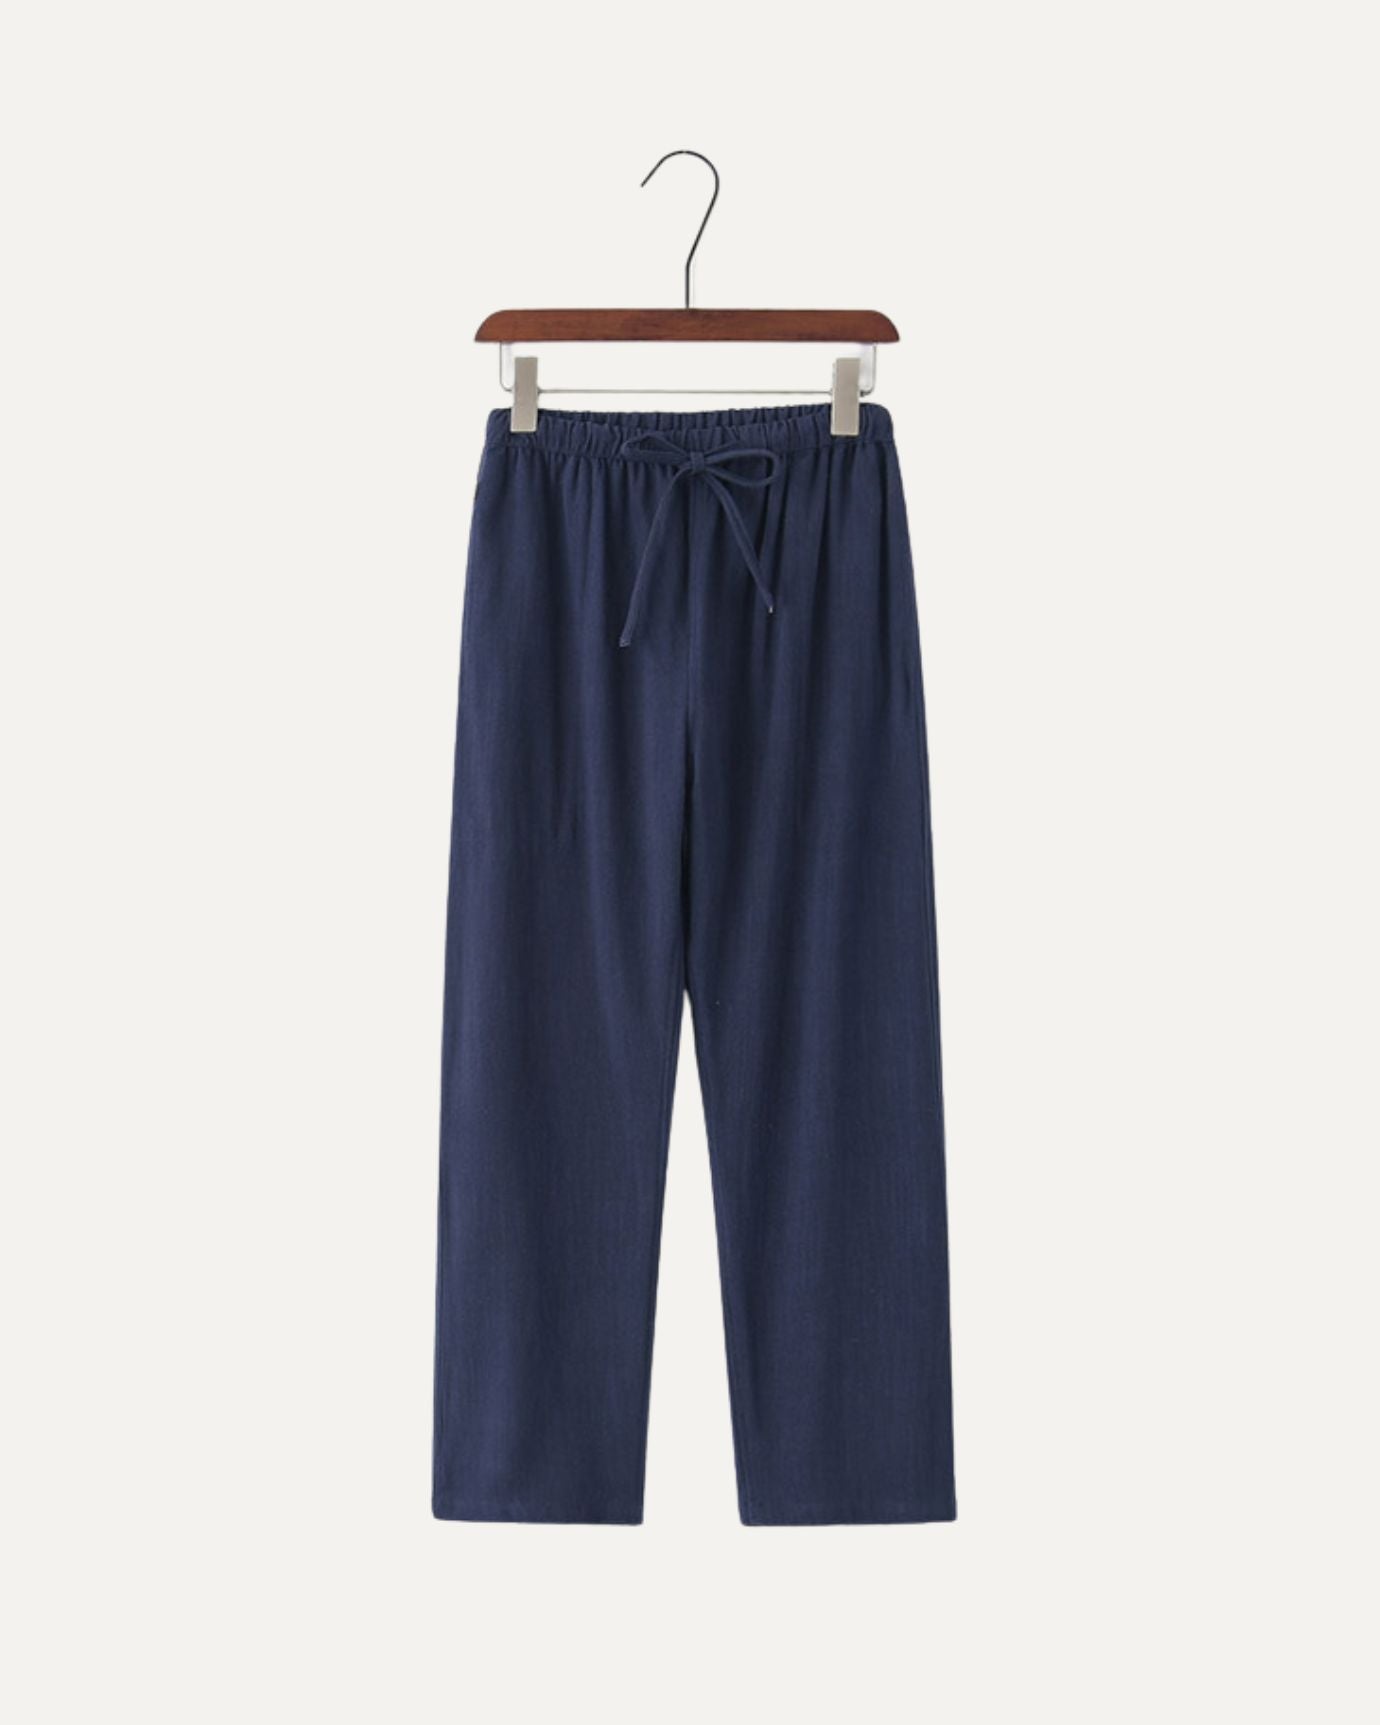 Marbella Linen Pants Long